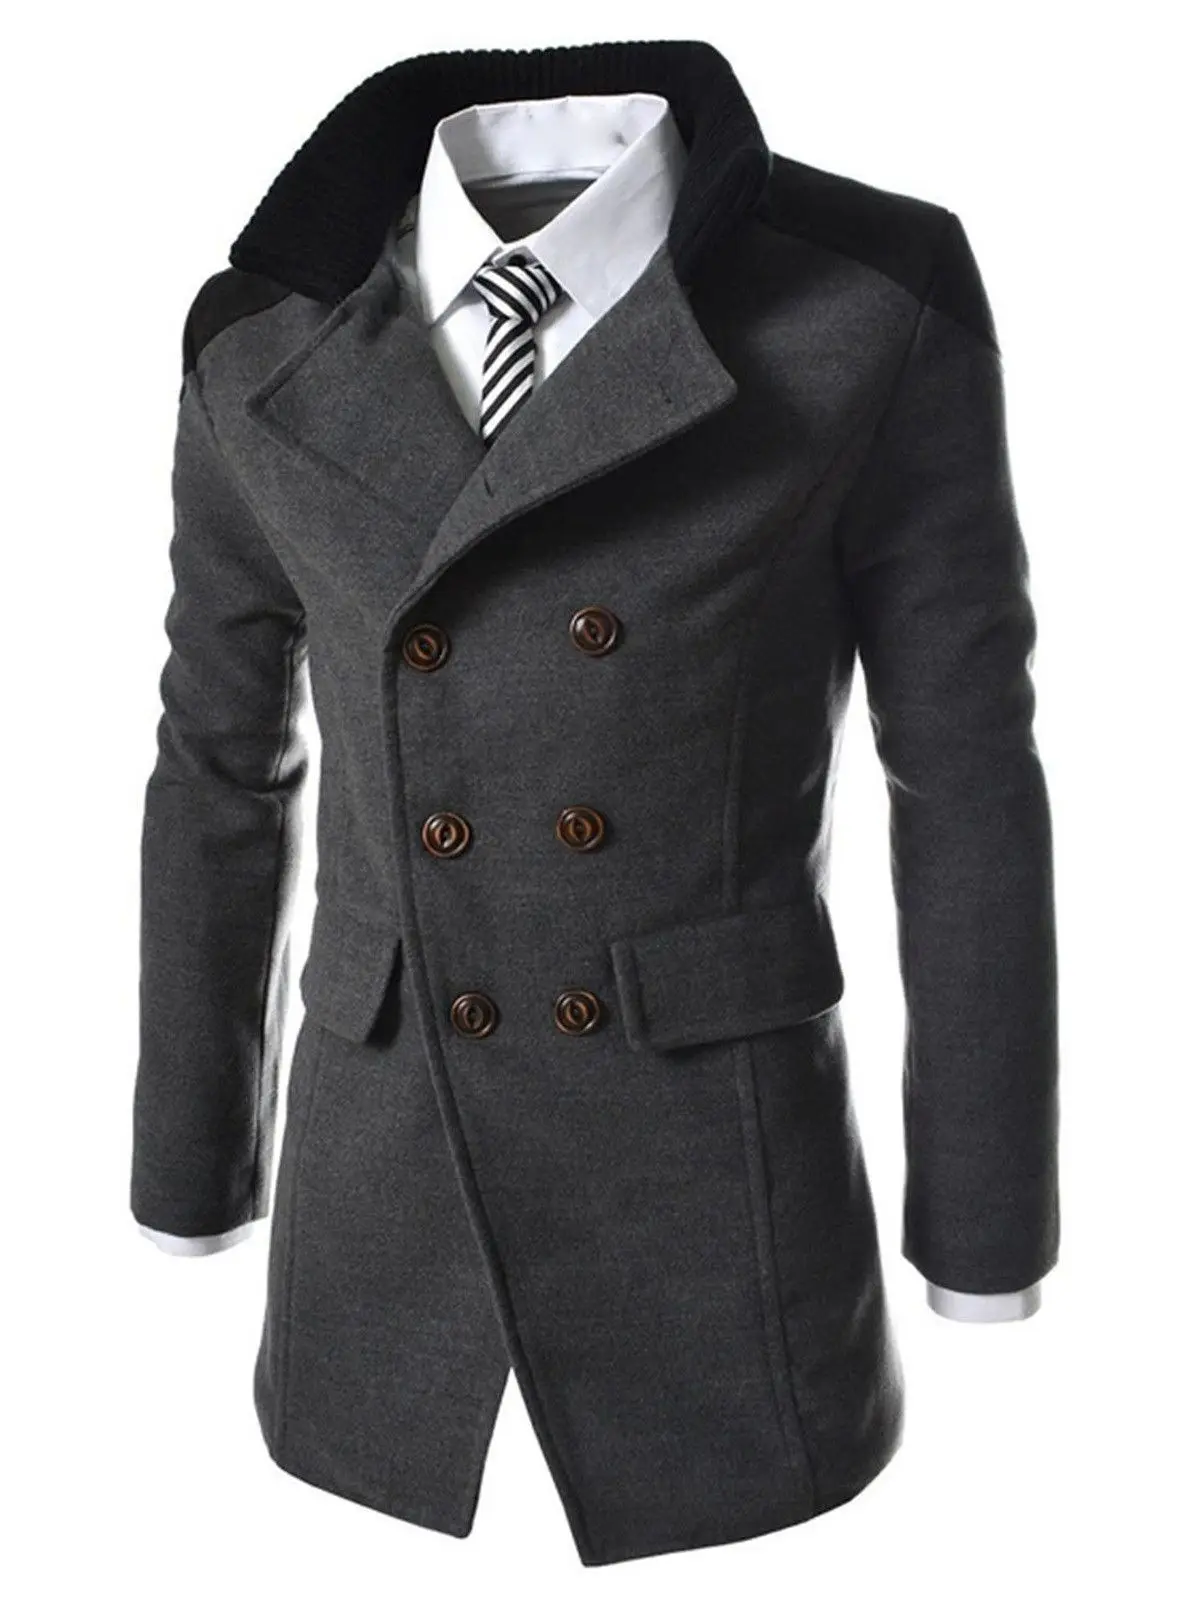 Мужское пальто уфа. Пальто мужское зимнее. Пальто мужское молодежное. Полупальто мужское. Модное мужское пальто.